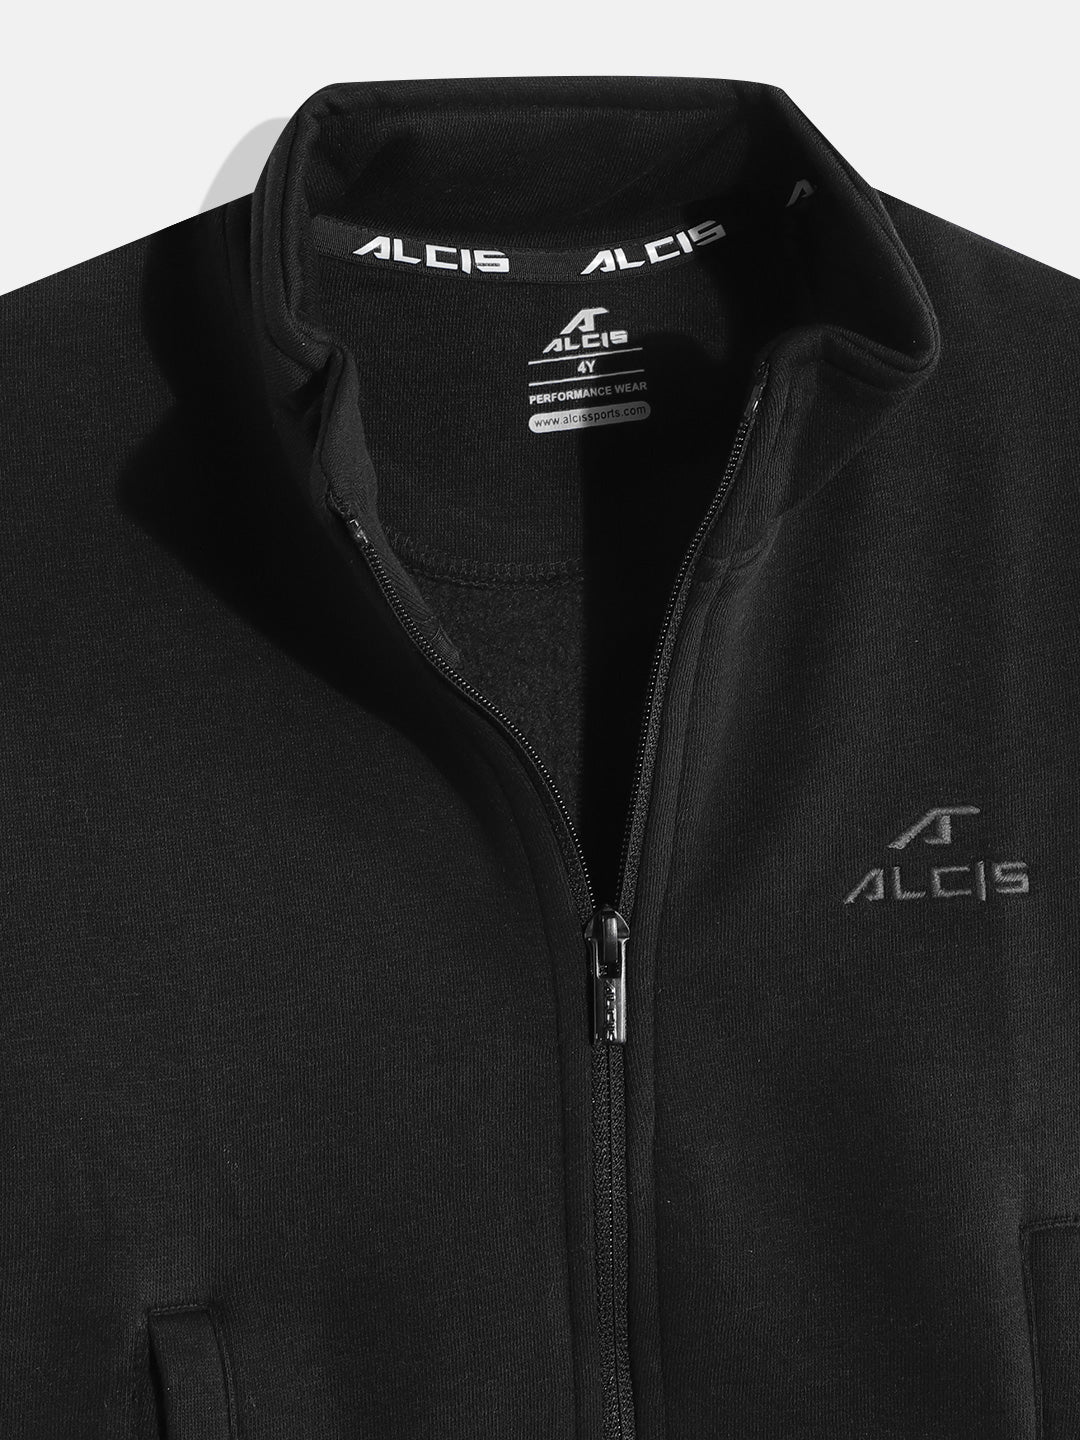 Alcis Boys Black Solid Sweatshirt